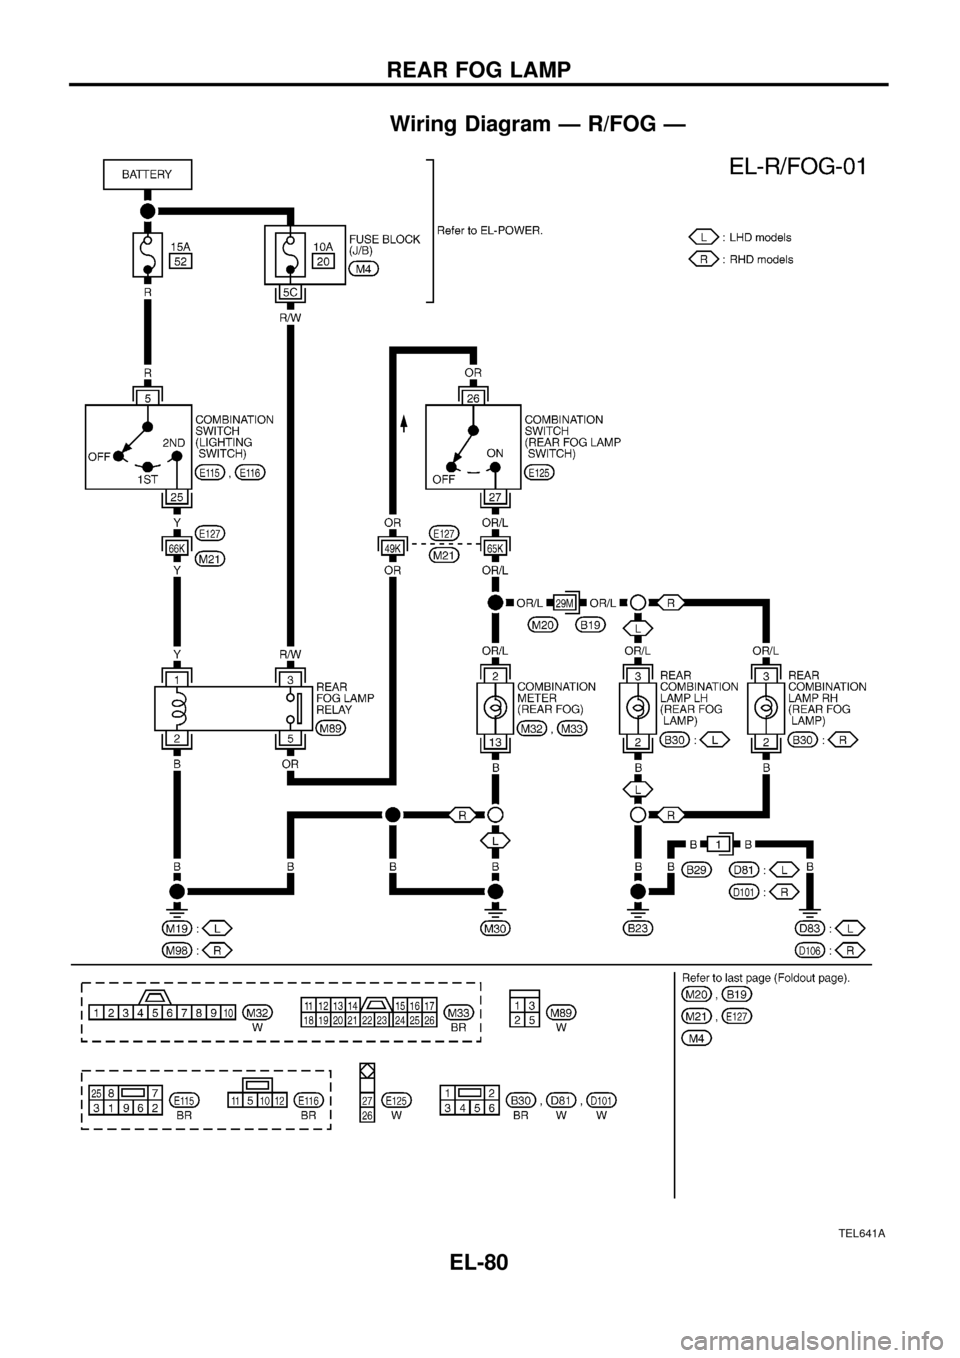 NISSAN PATROL 1998 Y61 / 5.G Electrical System Manual Online Wiring Diagram Ð R/FOG Ð
TEL641A
REAR FOG LAMP
EL-80 